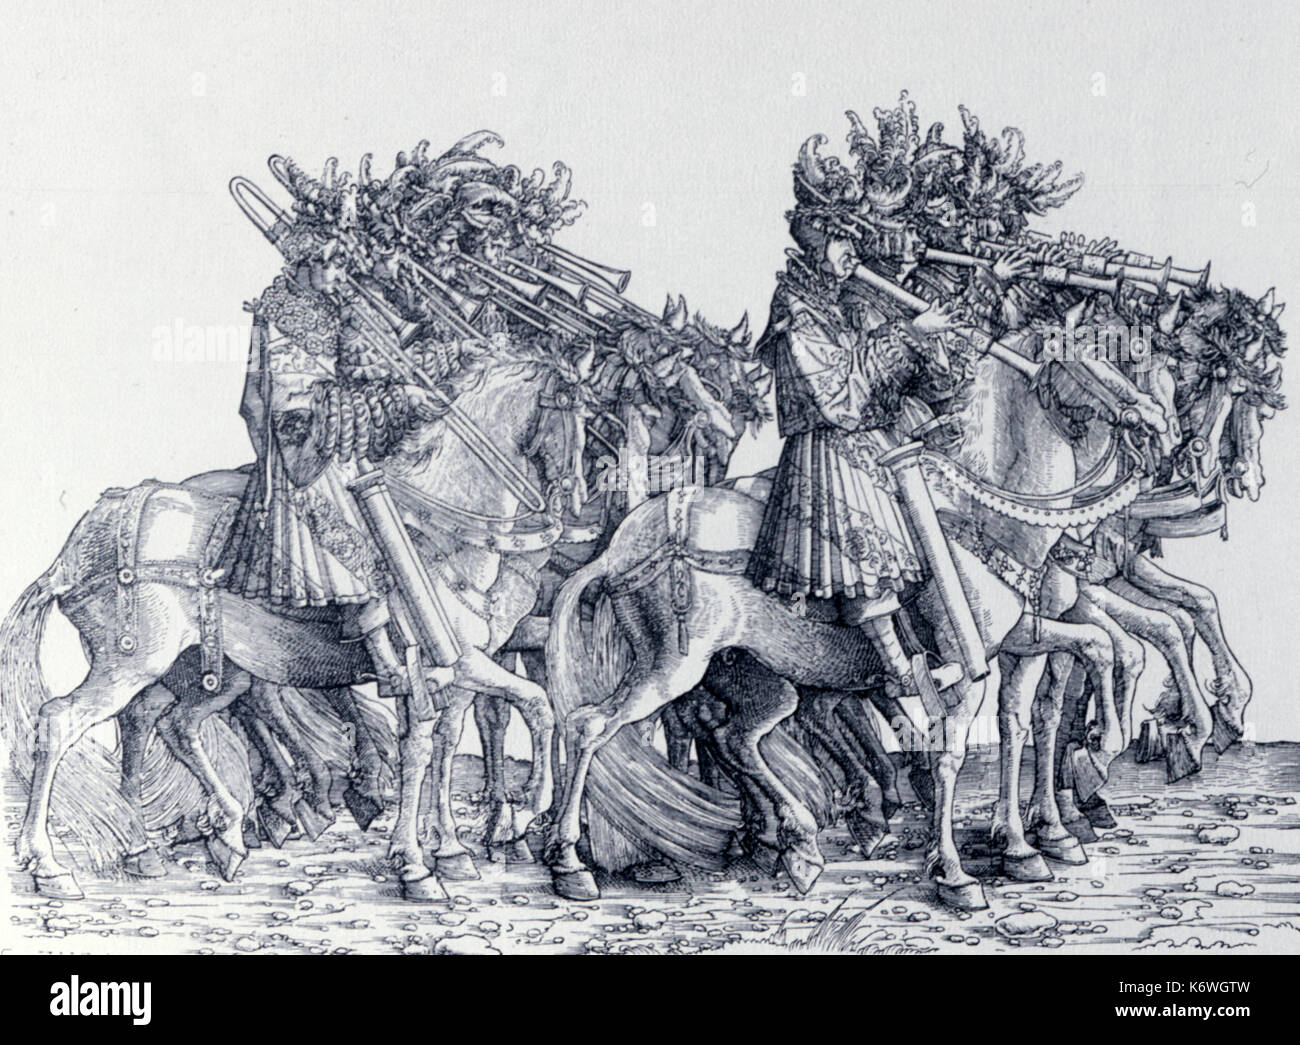 Trionfo di Massimiliano, c1516 - sackbuts & bombarda il trionfo di Massimiliano, c1516. Dettaglio mostrante i musicisti a cavallo giocando Sackbut (inizio trombone) e bombarda. L'artista- Hans Burgkmair(1473-1531). Processione Foto Stock